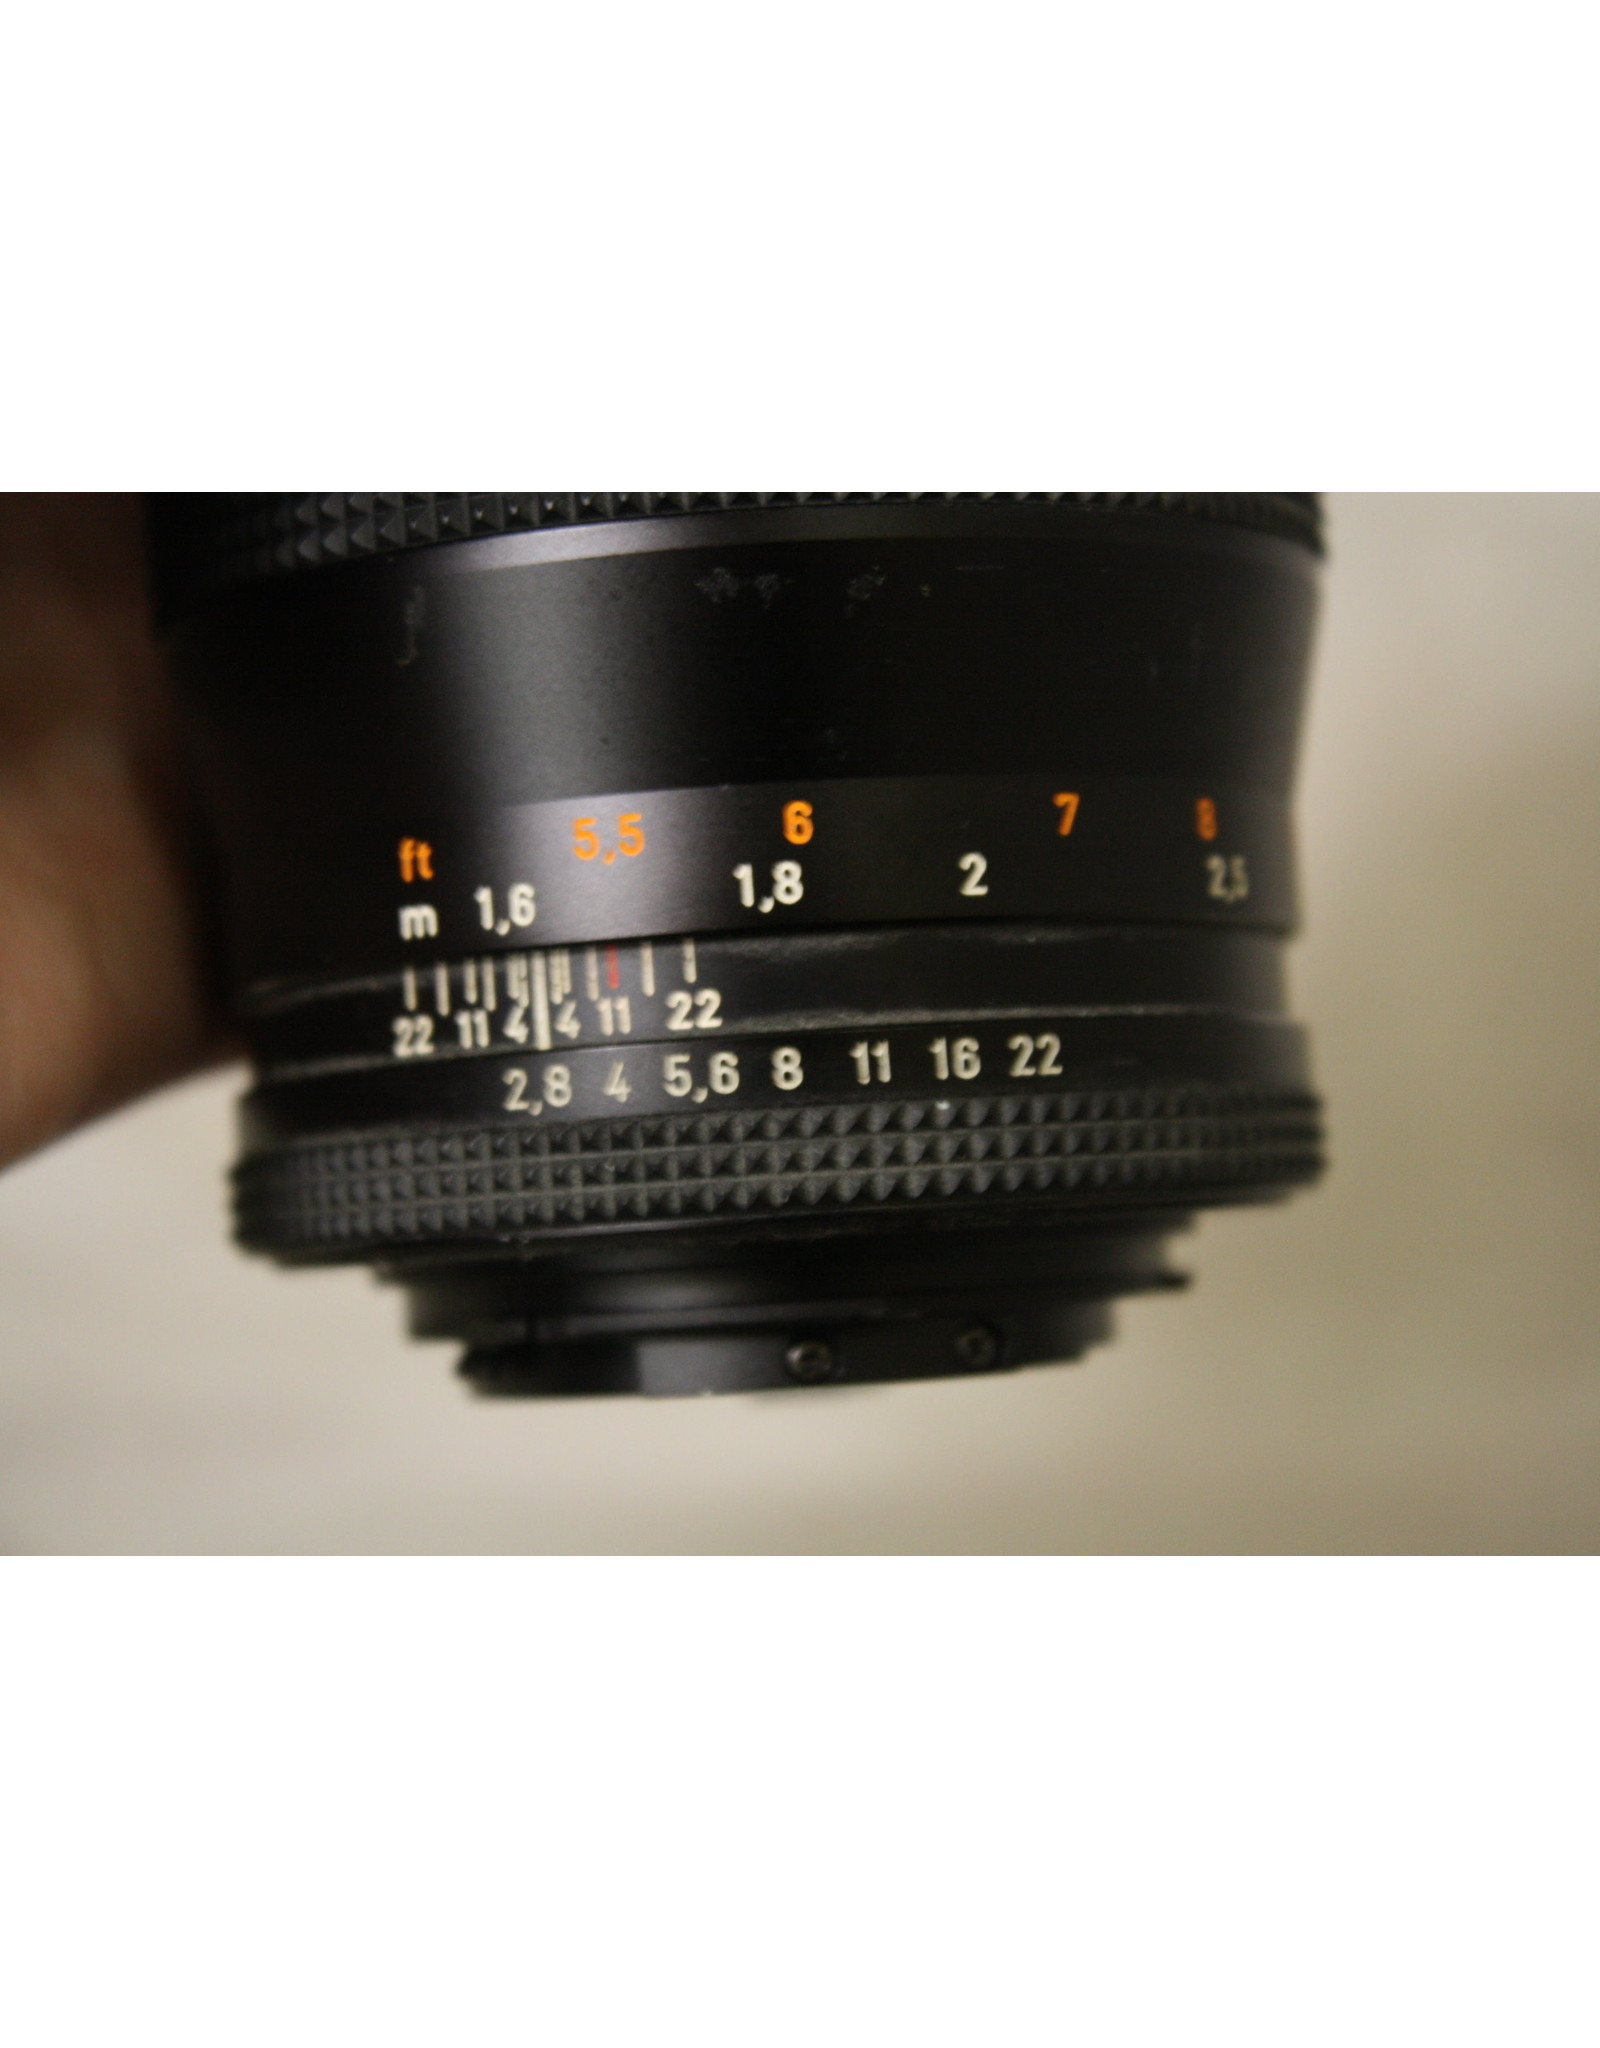 ヤシカコンタックス sonnar 135mm f2.8 カールツァイス - カメラ